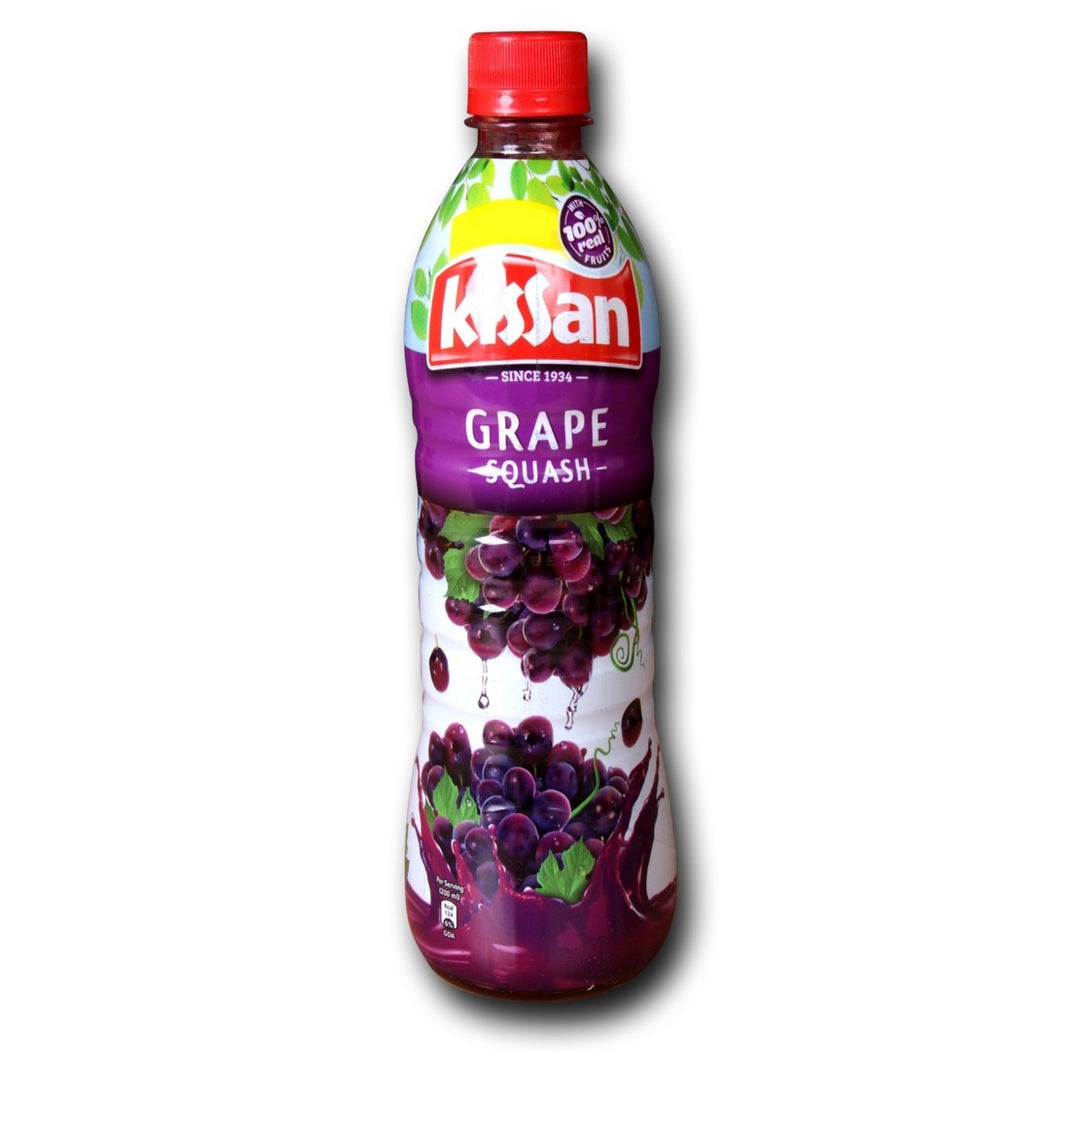 Kissan Grape Squash 700ml